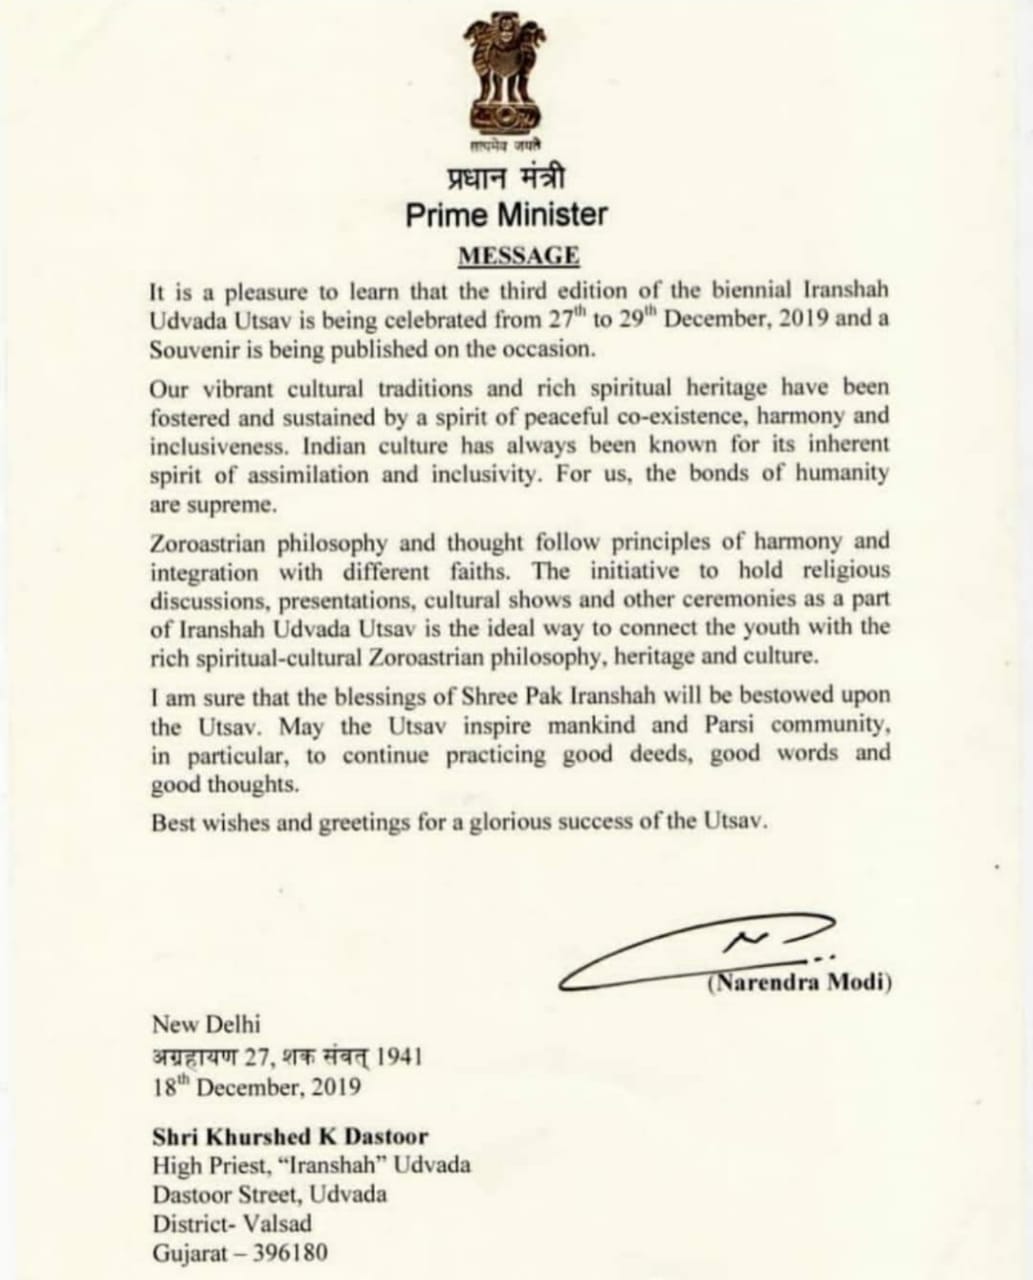 پیام شادباش ناندرا مودی رییس جمهور هند به زرتشتیان هند به مناسبت سالگرد بنیانگذاری انجمن ایرانشاه اودواره اوستا